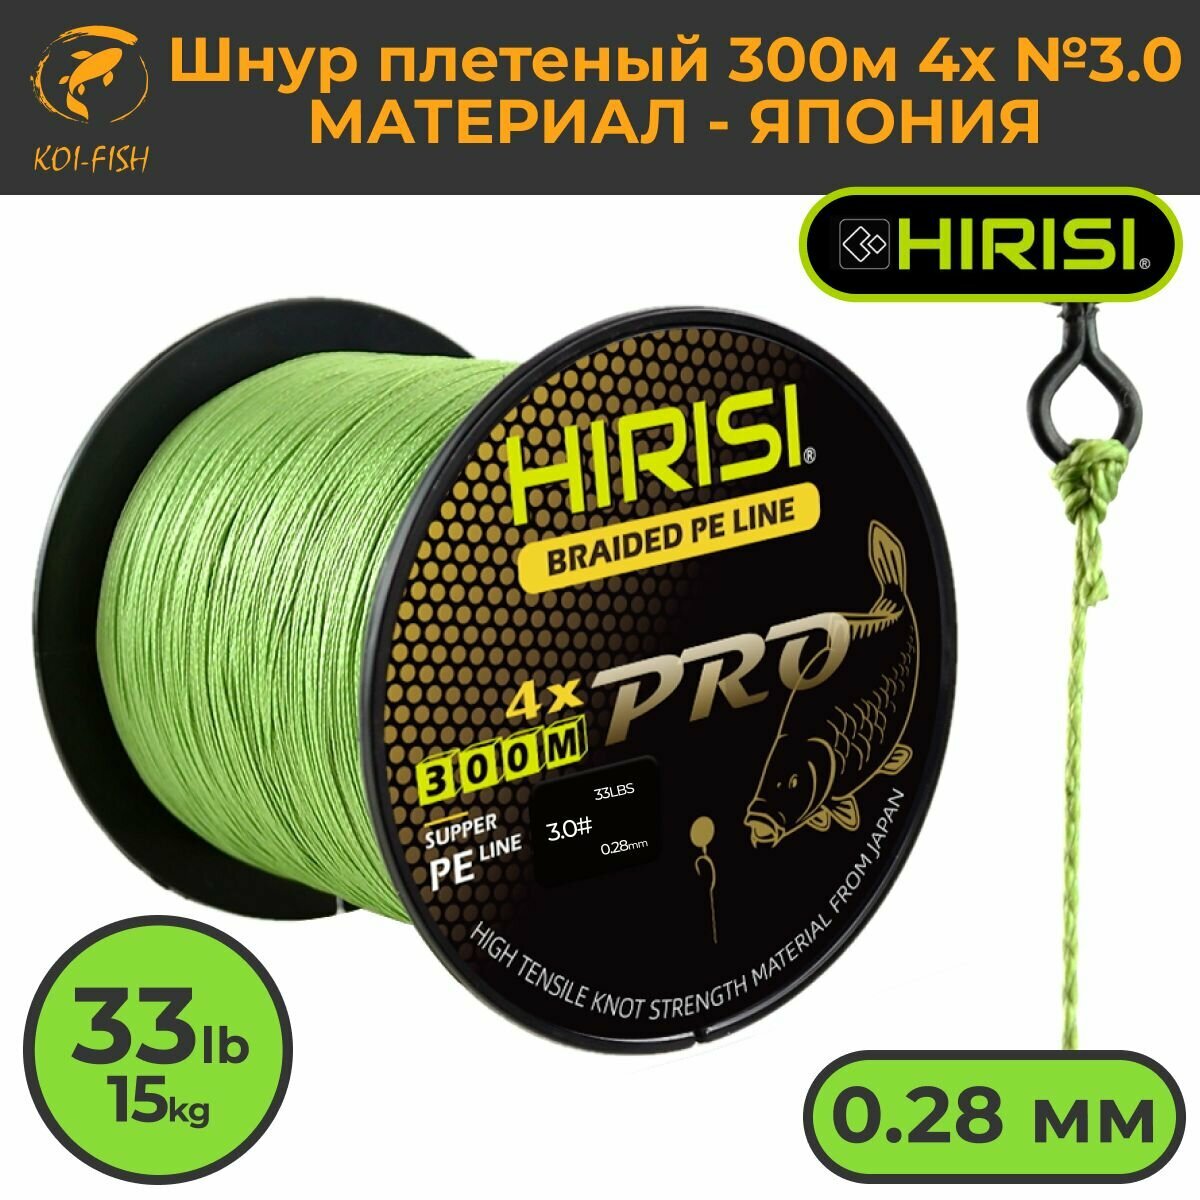 Шнур плетеный HIRISI четырехжильный №3.0 300м 33LB (15кг) (Braided Pe Line №3.0_33LB) зеленый, материал - Япония, шнур рыболовный для ловли карпа